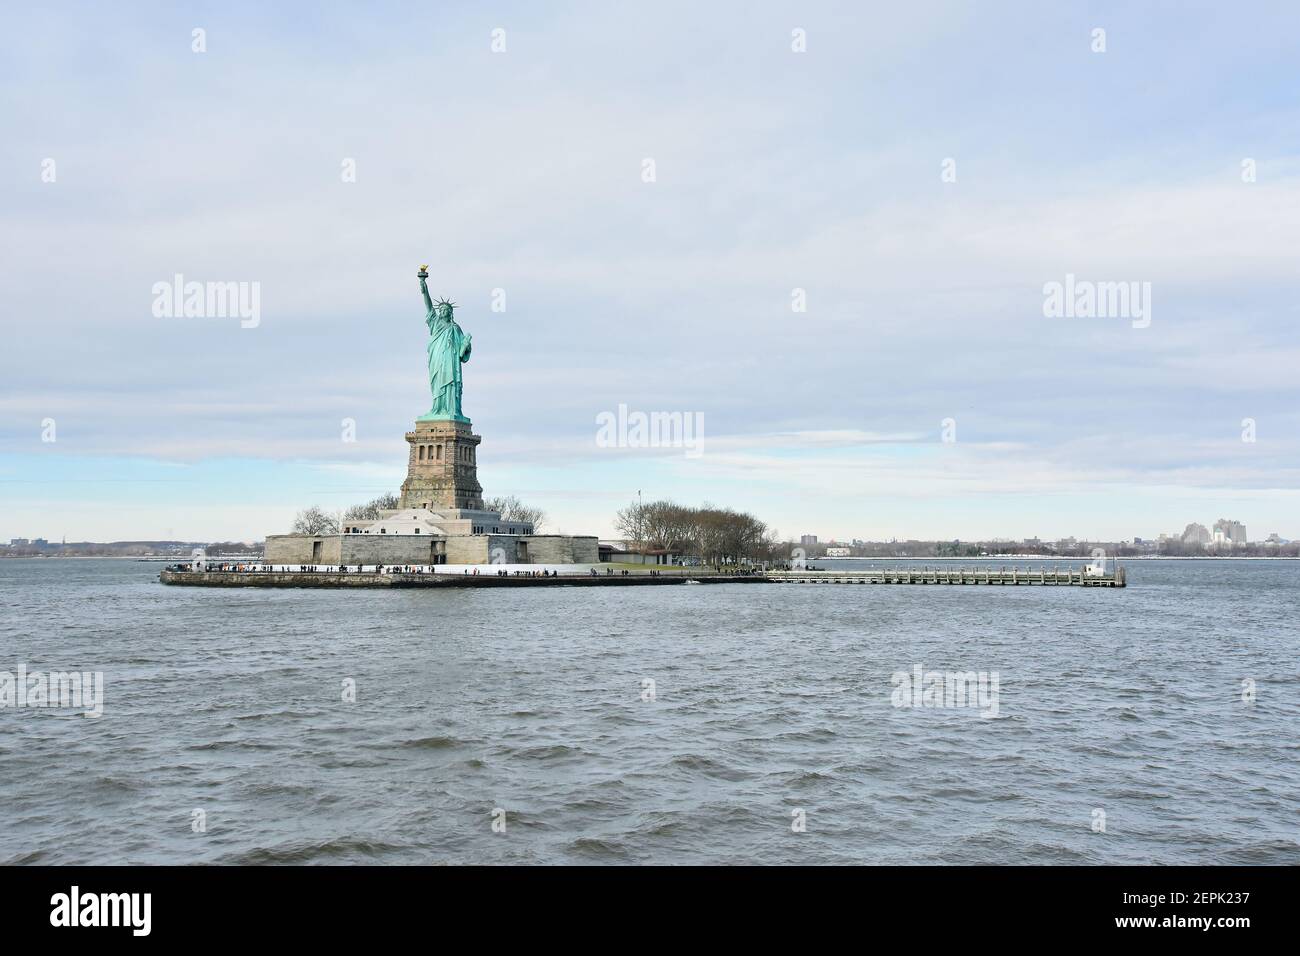 Statua della libertà, colossale scultura neoclassica e conosciuta anche come la libertà che illumina il mondo visto in una crociera sul fiume Hudson. Foto Stock